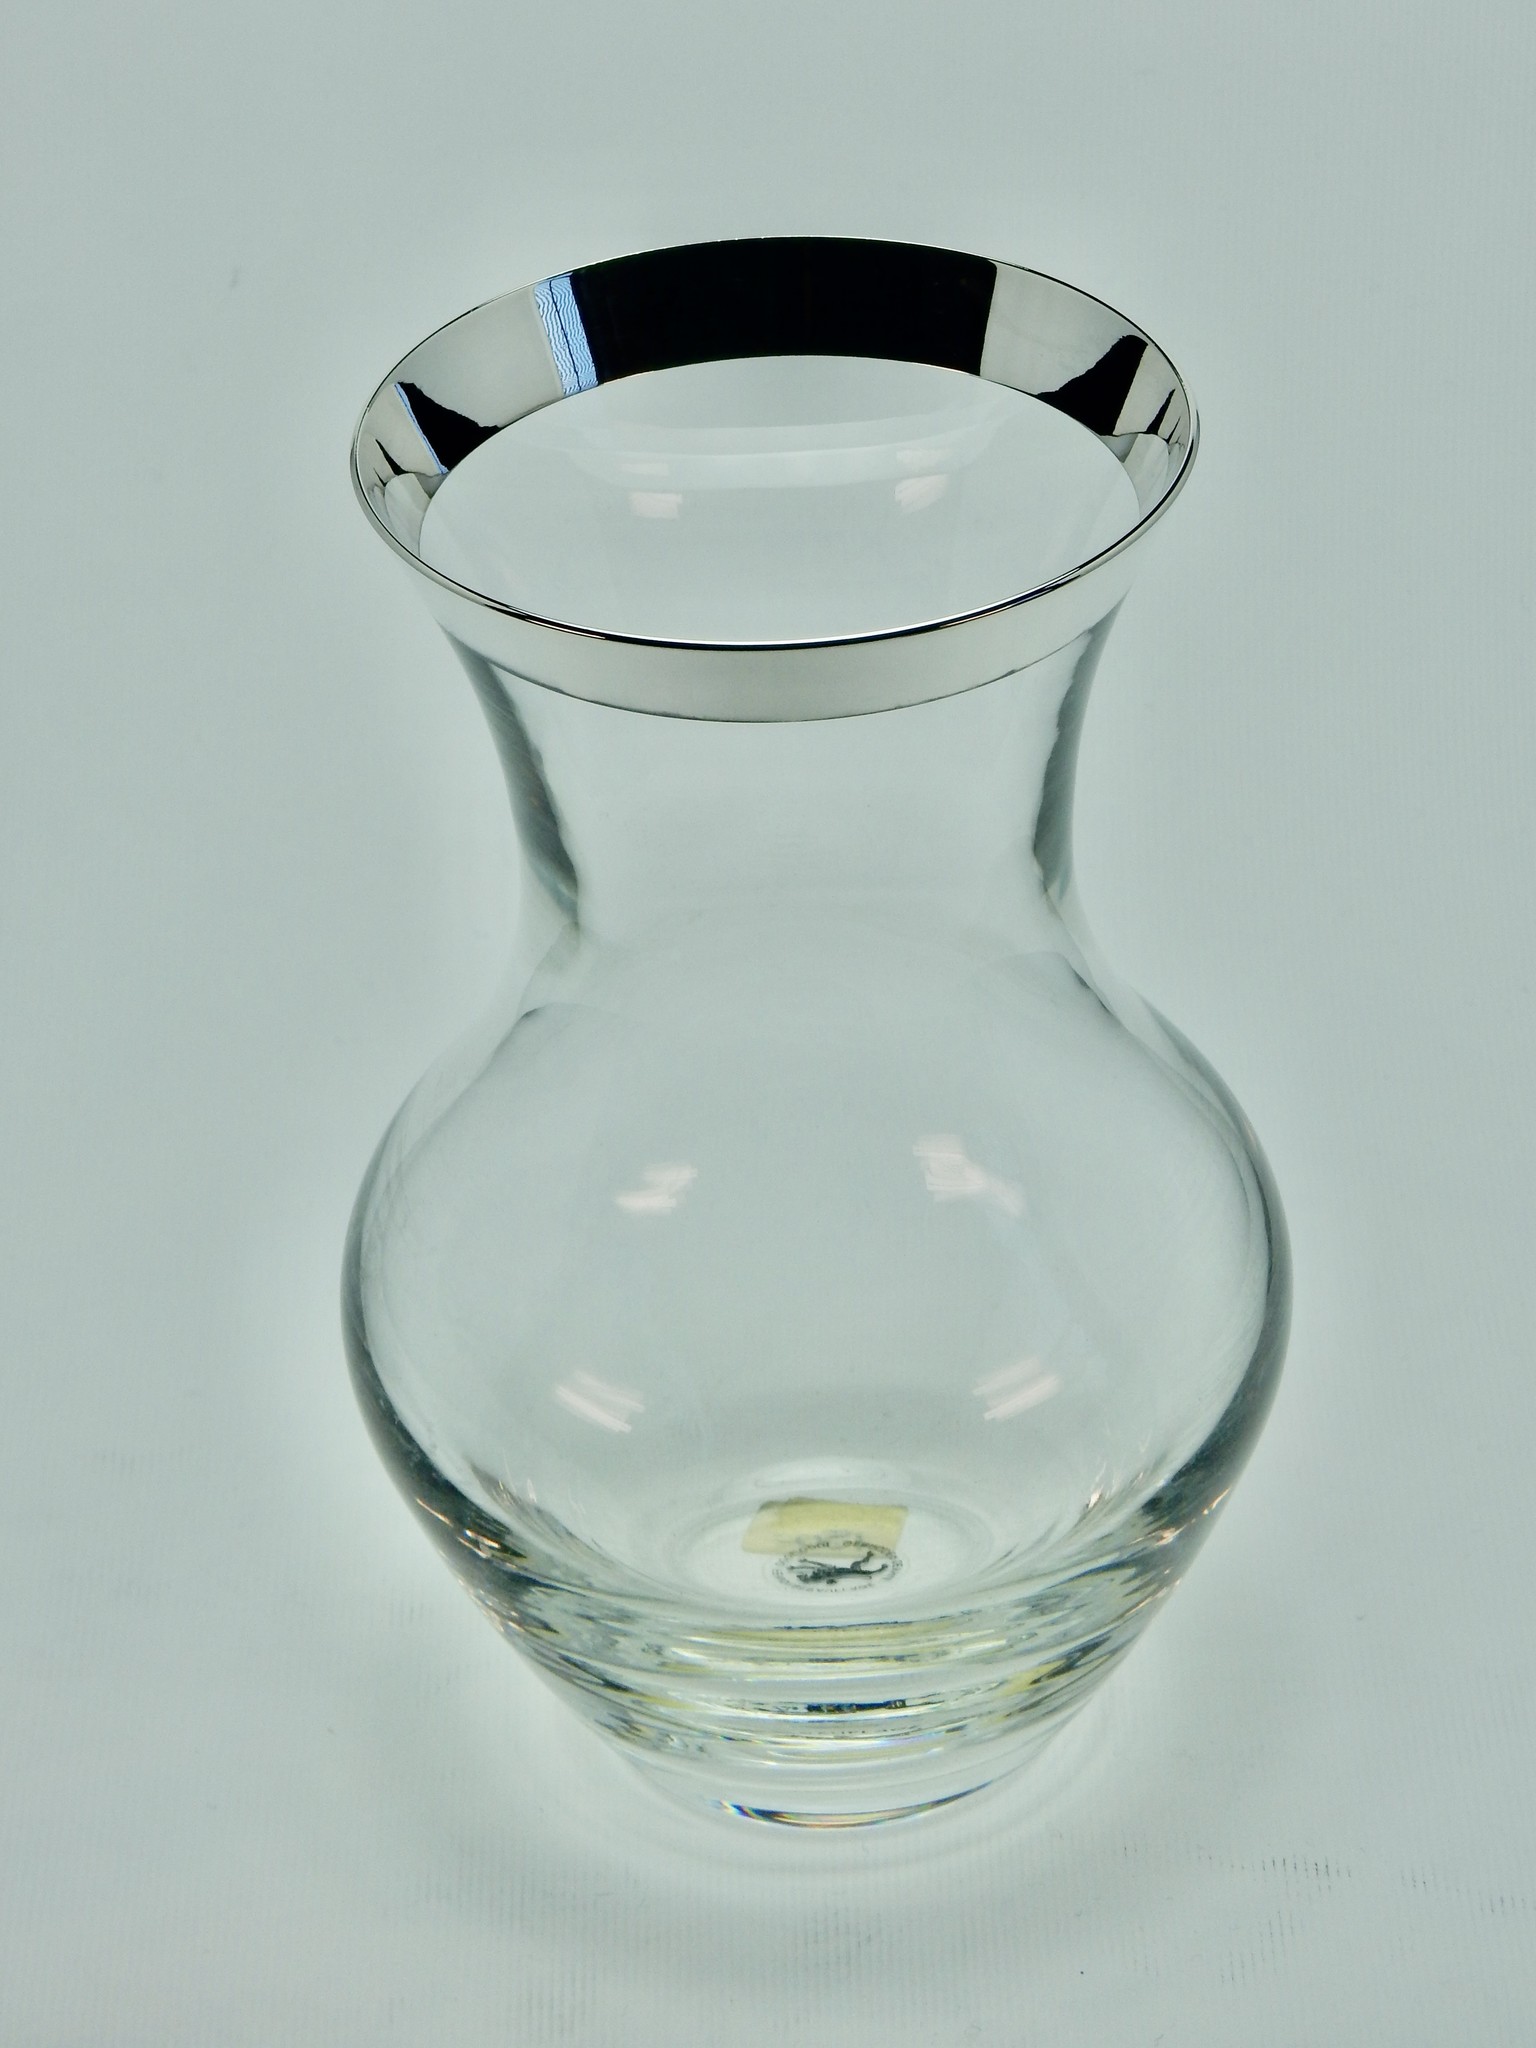 Kristallen vaas met rand in 925 zilver, 170 mm hoog